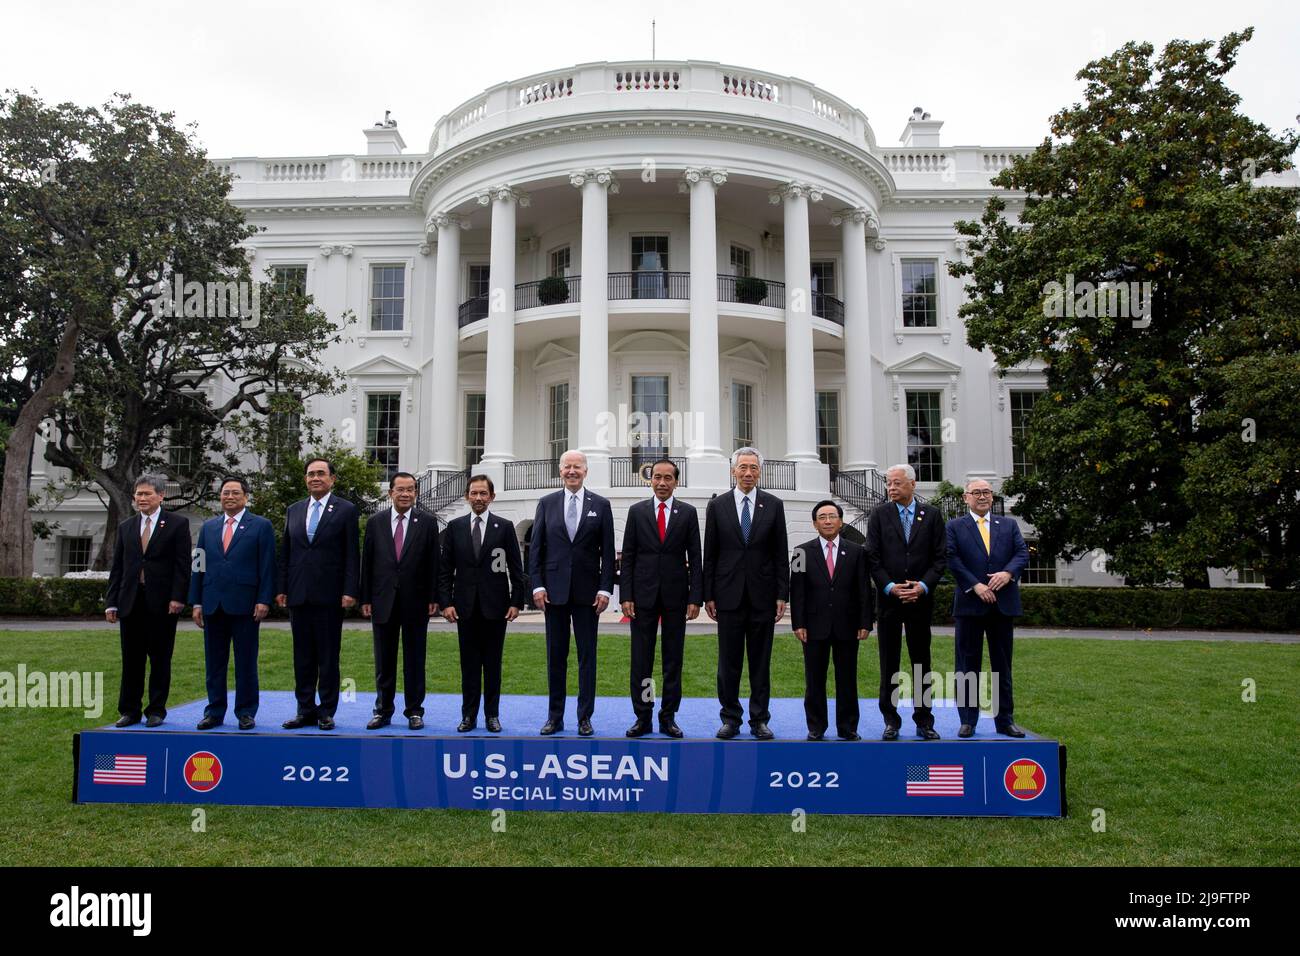 Washington, DC, États-Unis. 12th mars 2022. LE Président AMÉRICAIN Joe Biden (C) pose avec les dirigeants du Sommet spécial États-Unis-ASEAN lors d'une photo de famille sur la pelouse sud de la Maison Blanche à Washington, DC, Etats-Unis, 12 mars 2022. Biden a accueilli les dirigeants des pays de l'ANASE et le Secrétaire général de l'ANASE à la Maison Blanche, alors que le Sommet spécial États-Unis-ANASE se réunit, le deuxième Sommet spécial depuis 2016. Le sommet devrait aborder la réponse de la COVID-19 et la sécurité sanitaire mondiale, le changement climatique et le développement durable. Crédit : Michael Reynolds/Pool via CNP/dpa/Alay Live News Banque D'Images